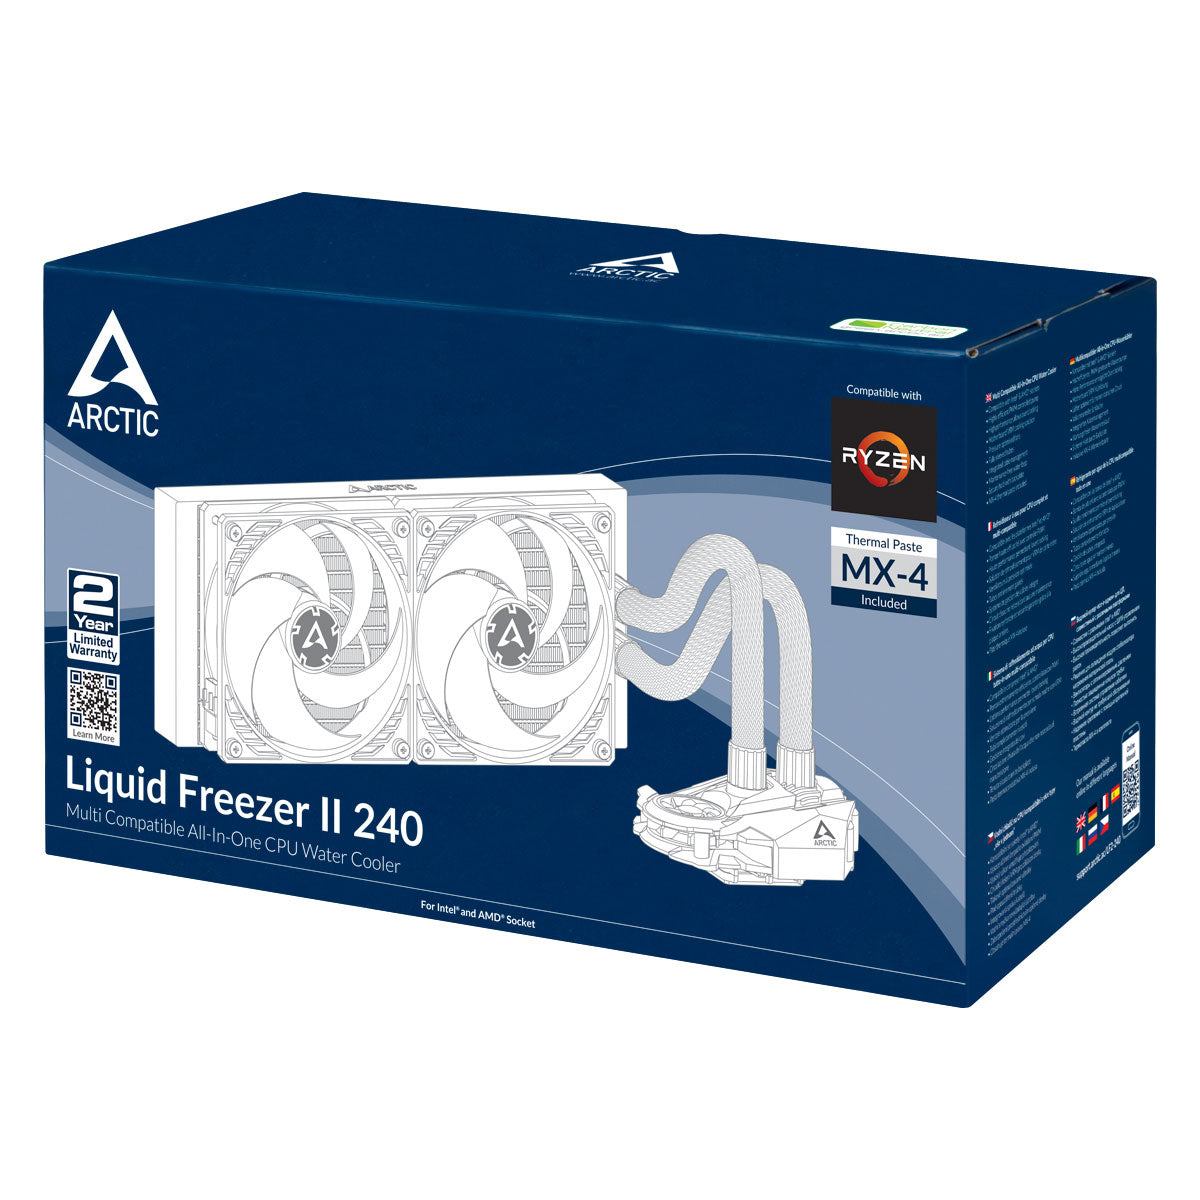 ARCTIC Liquid Freezer II 240 Kylvätskesystem Med Integrerad Pump